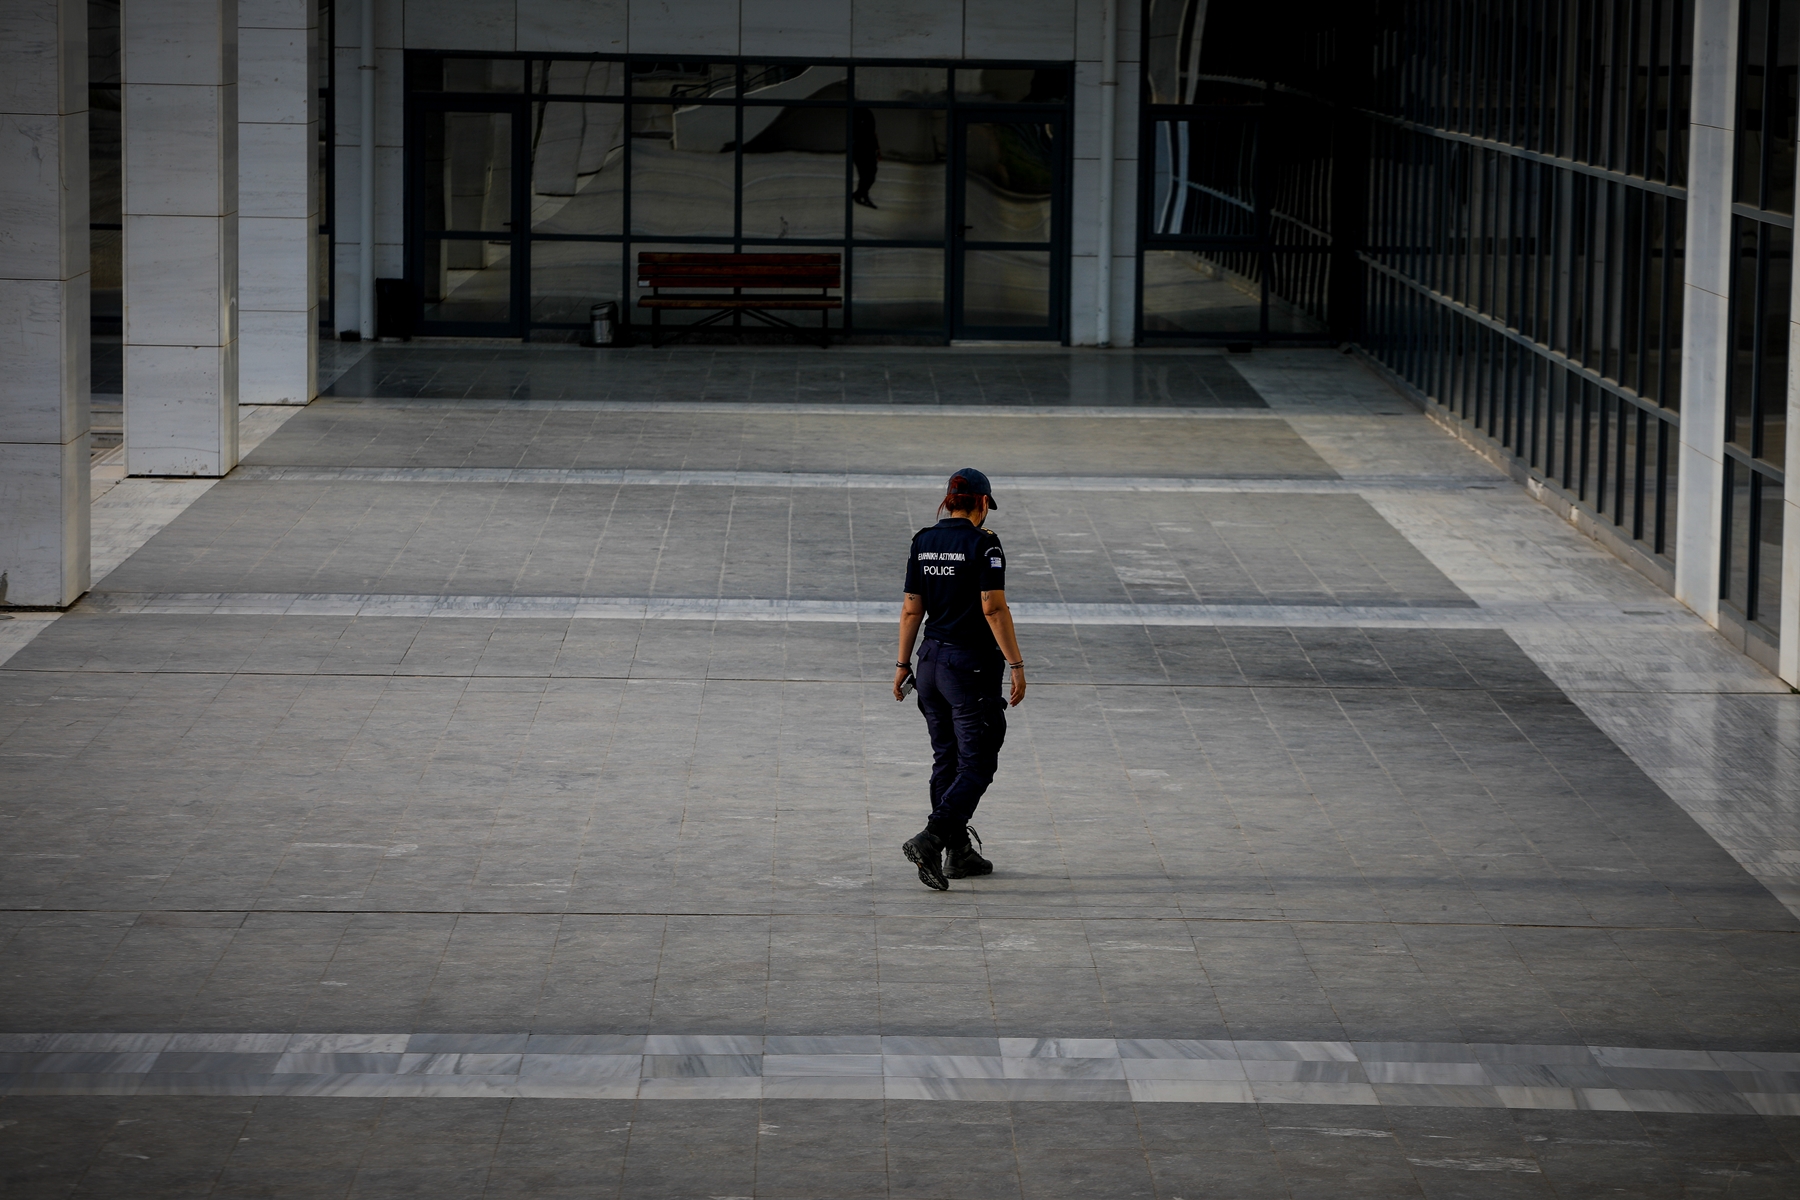 26χρονη αστυνομικός – Ναύπακτος: “Είμαστε συγκλονισμένοι από τον ξαφνικό θάνατο”